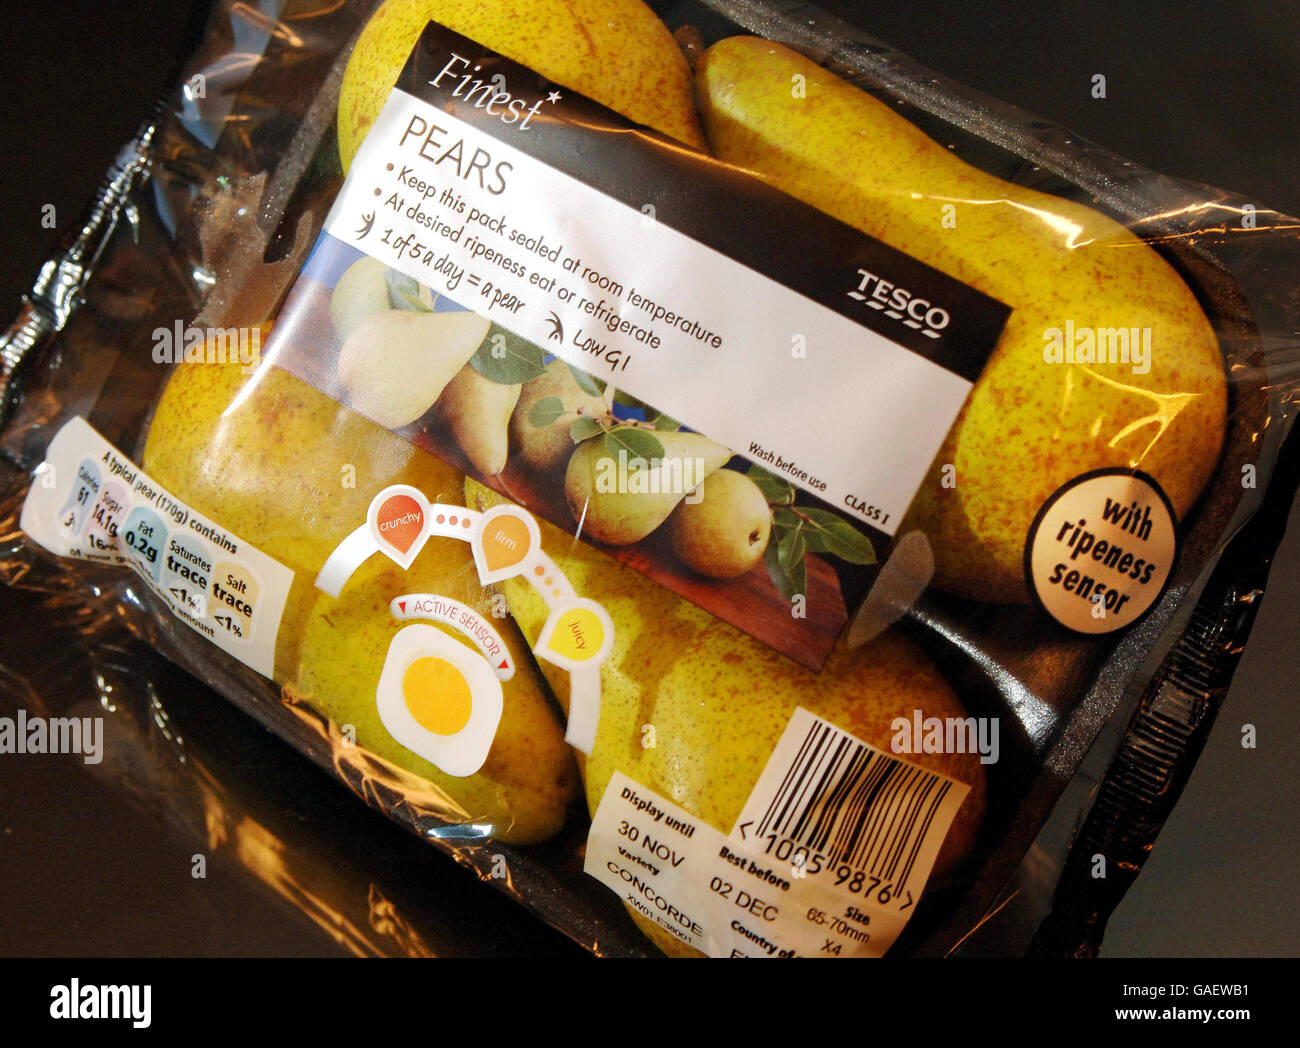 Le pere con un'etichetta del sensore che indica quando il frutto è maturo sono viste a Londra. Foto Stock